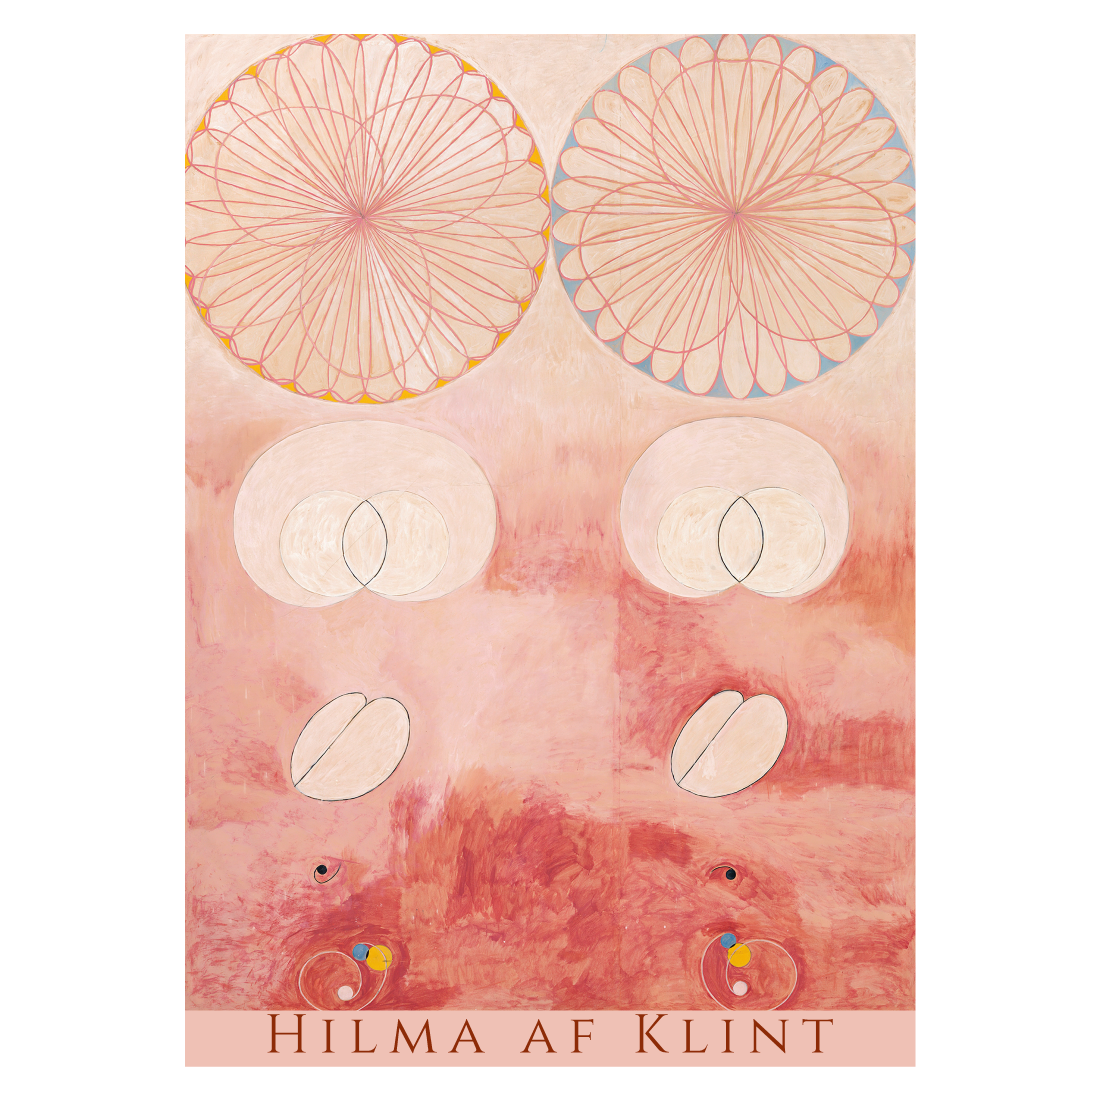 Kunstplakat med Hilma af Klints kunstværk "The Ten Largest No. 9"